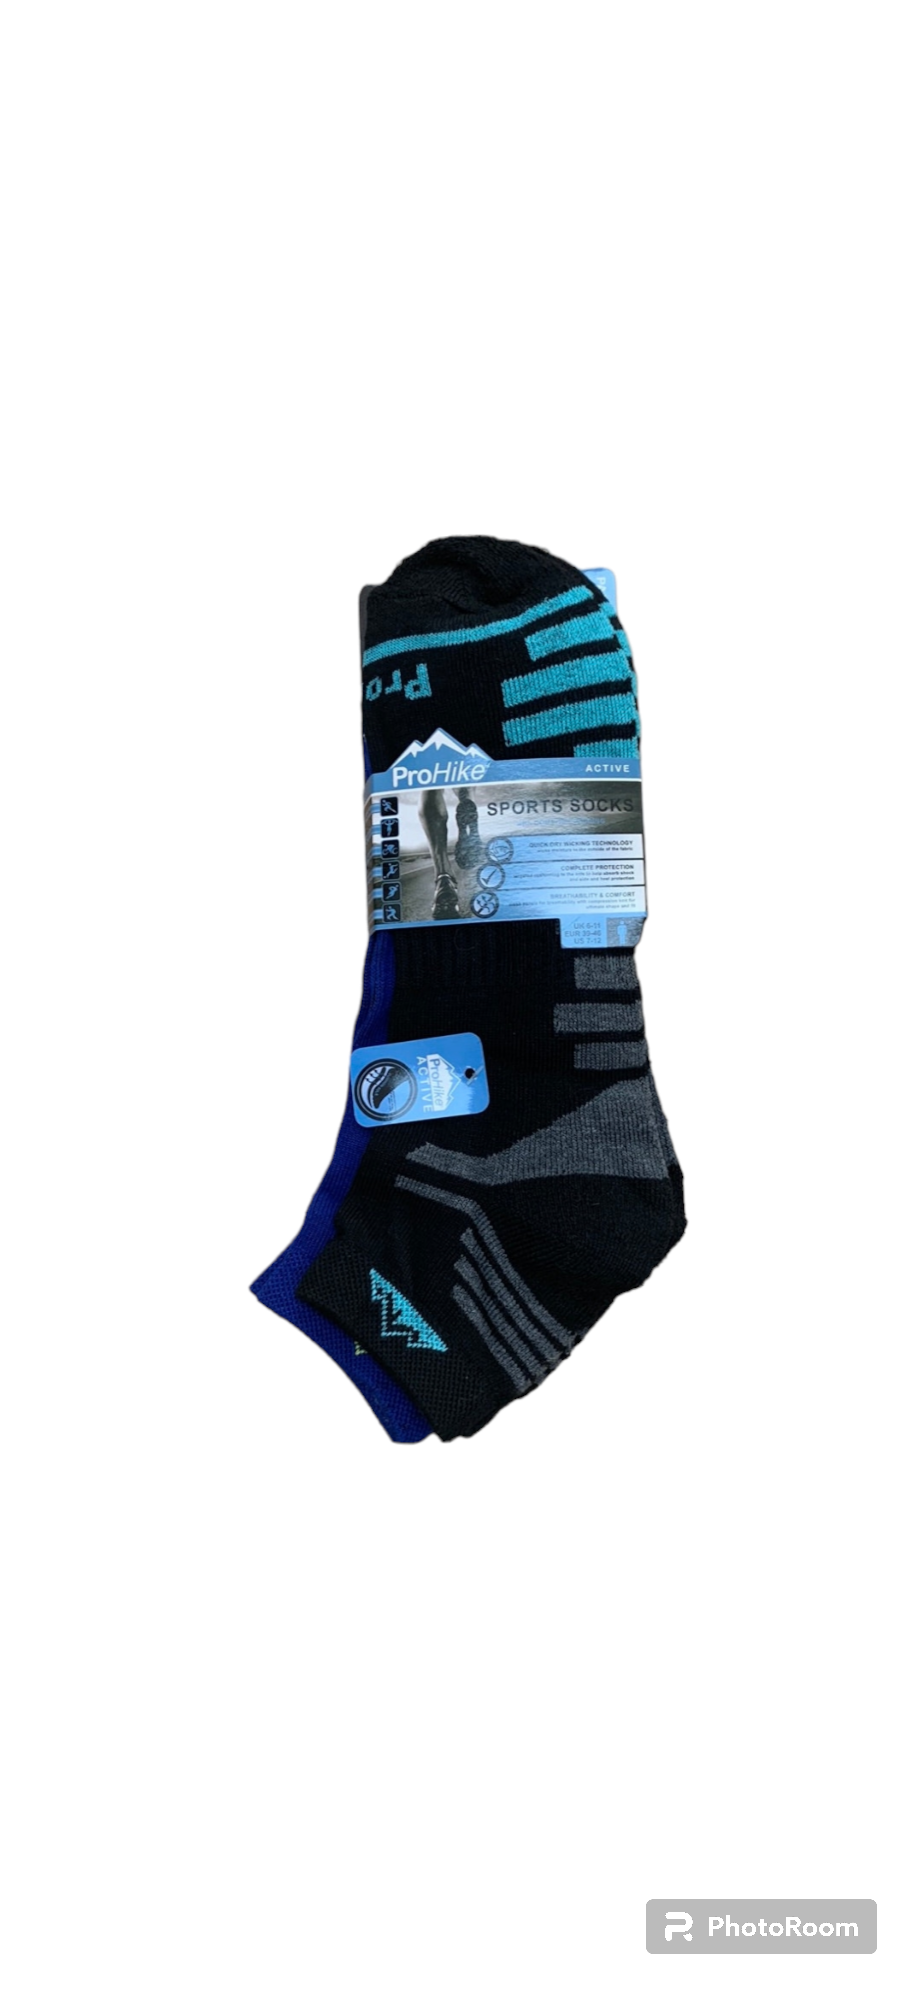 ProHike sports socks 2 pack